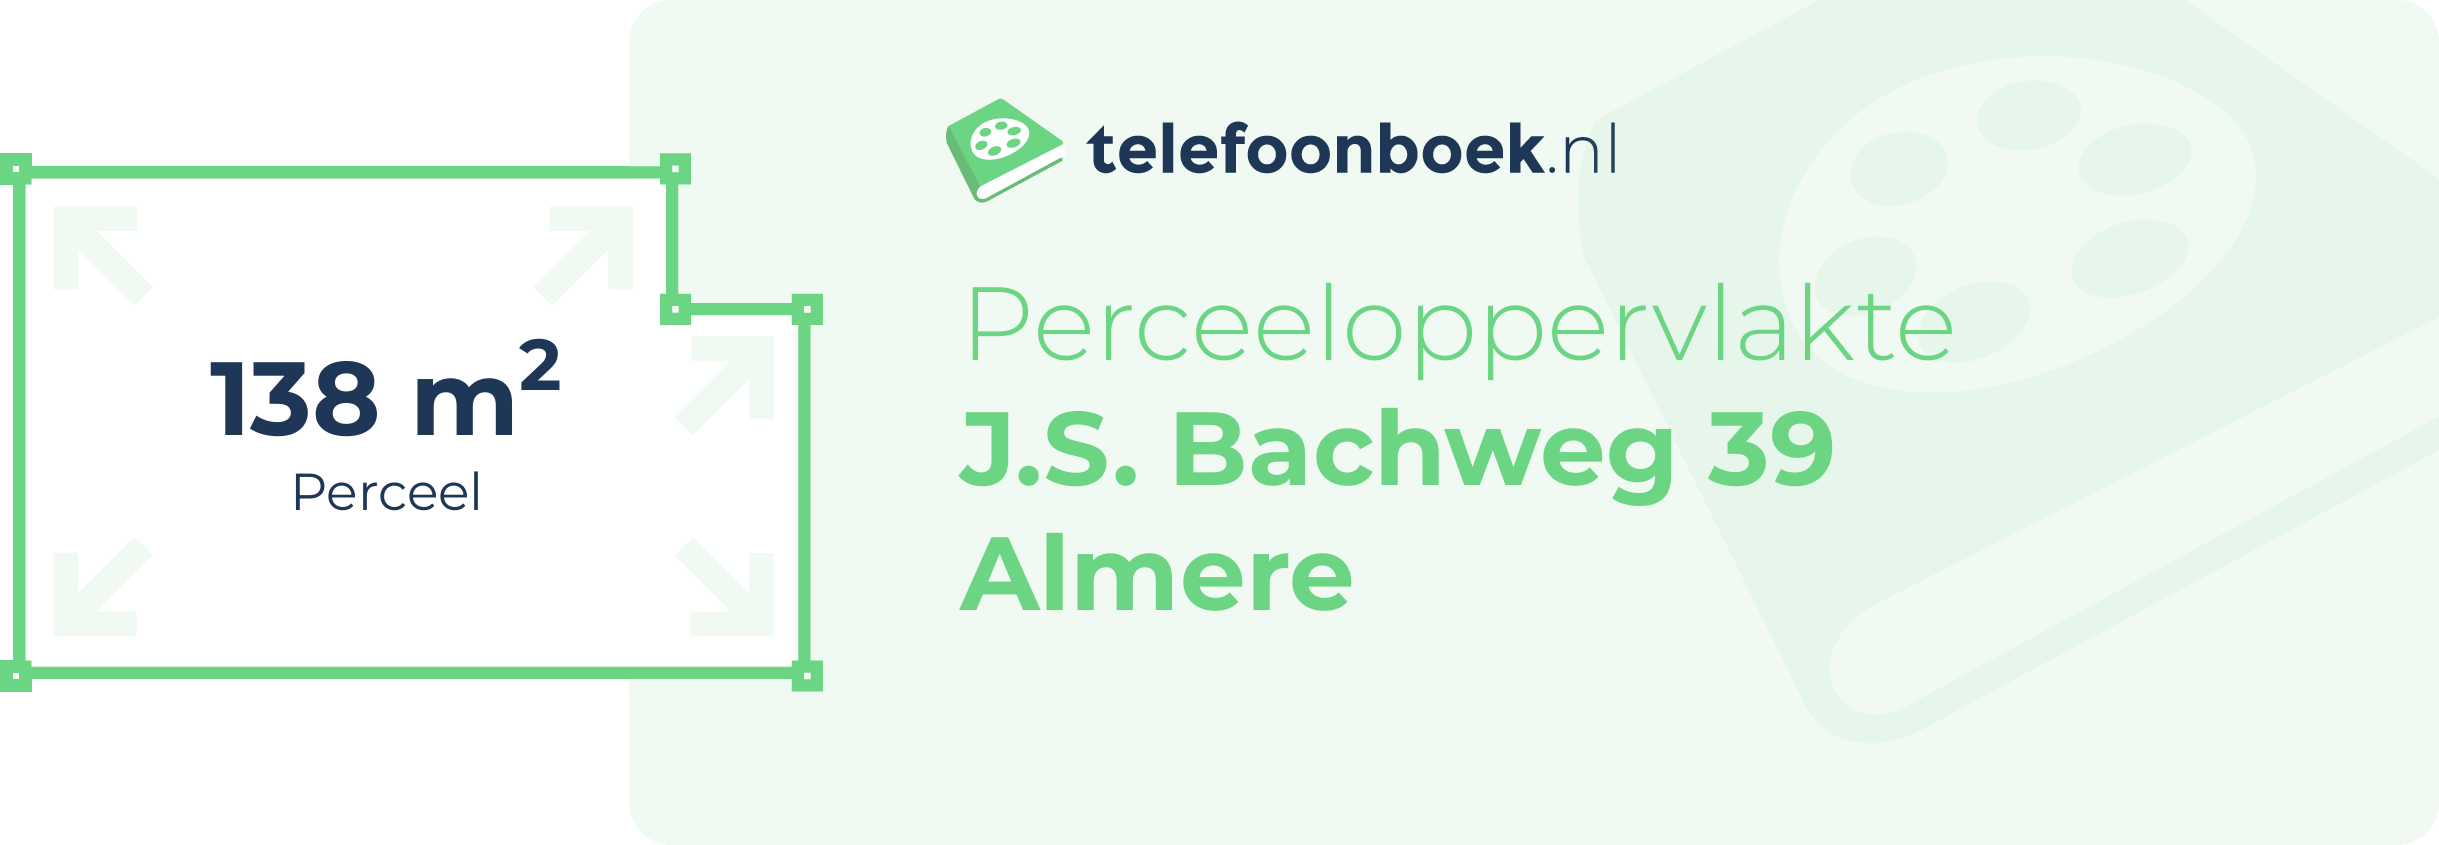 Perceeloppervlakte J.S. Bachweg 39 Almere